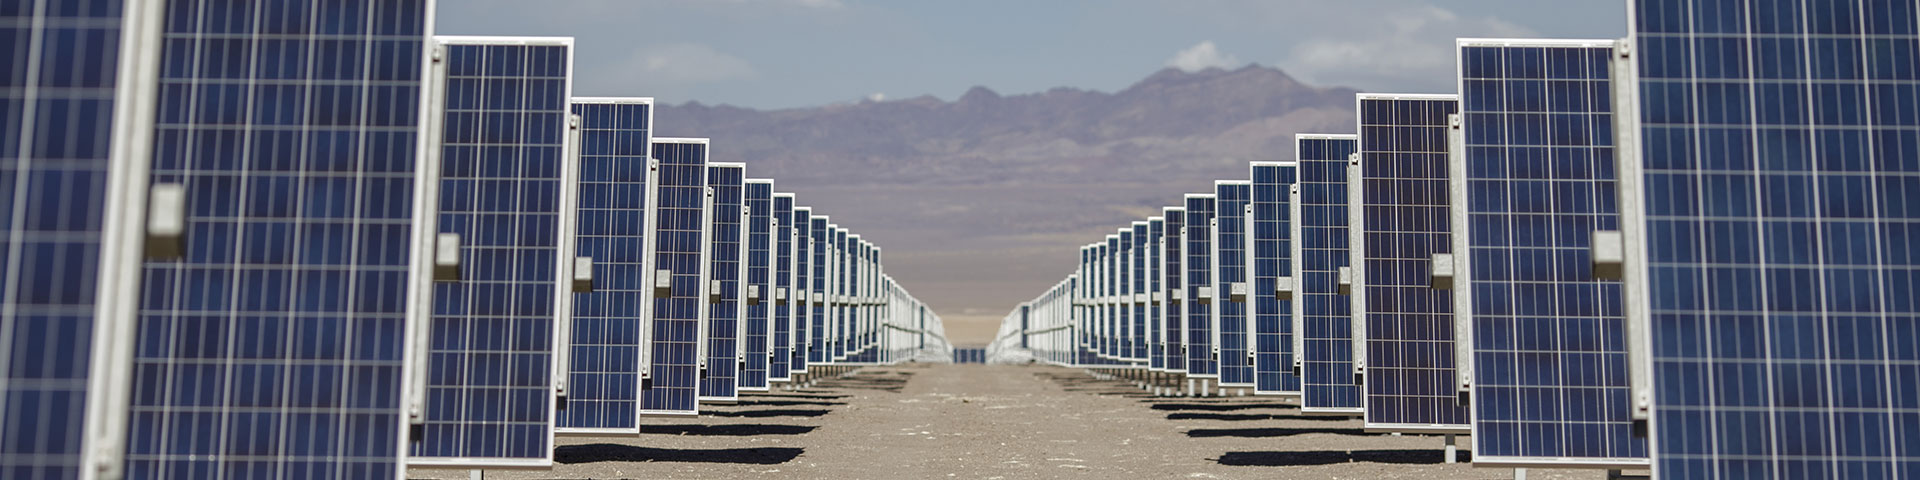 In Reihen angeordnete Solarpaneele stehen auf einem Feld.